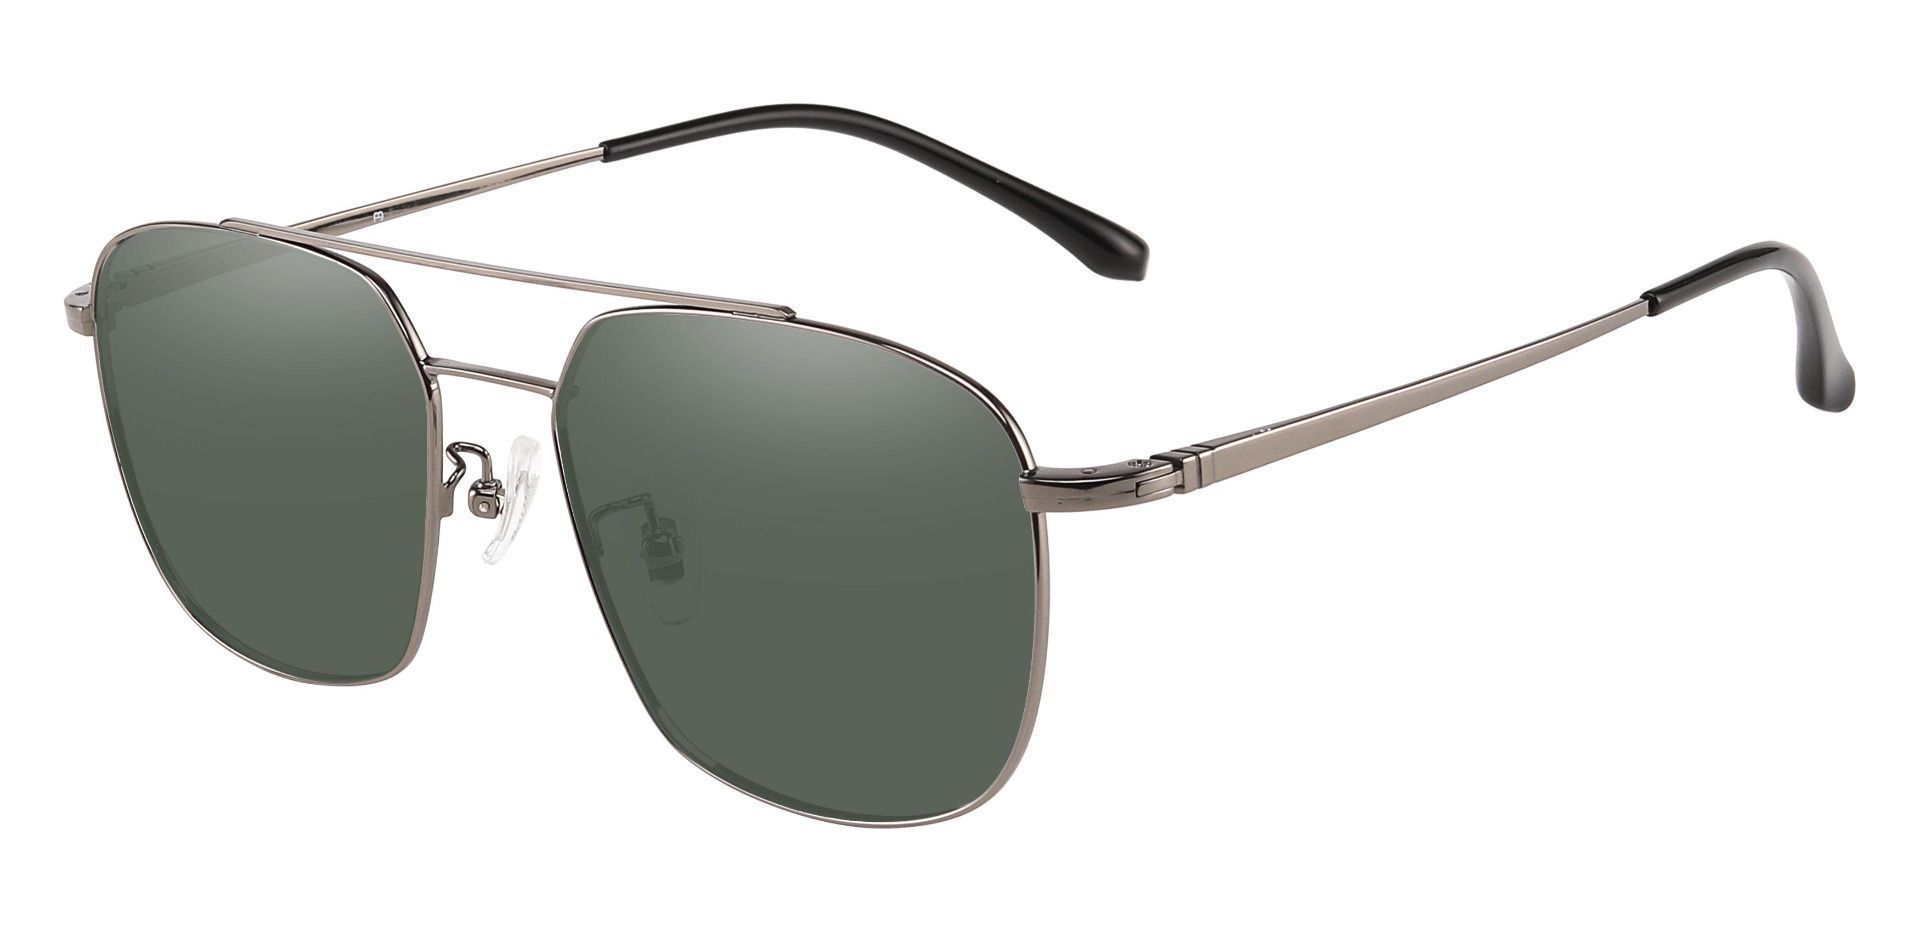 Trevor Aviator Progressive Sunglasses - Gray Frame With Green Lenses